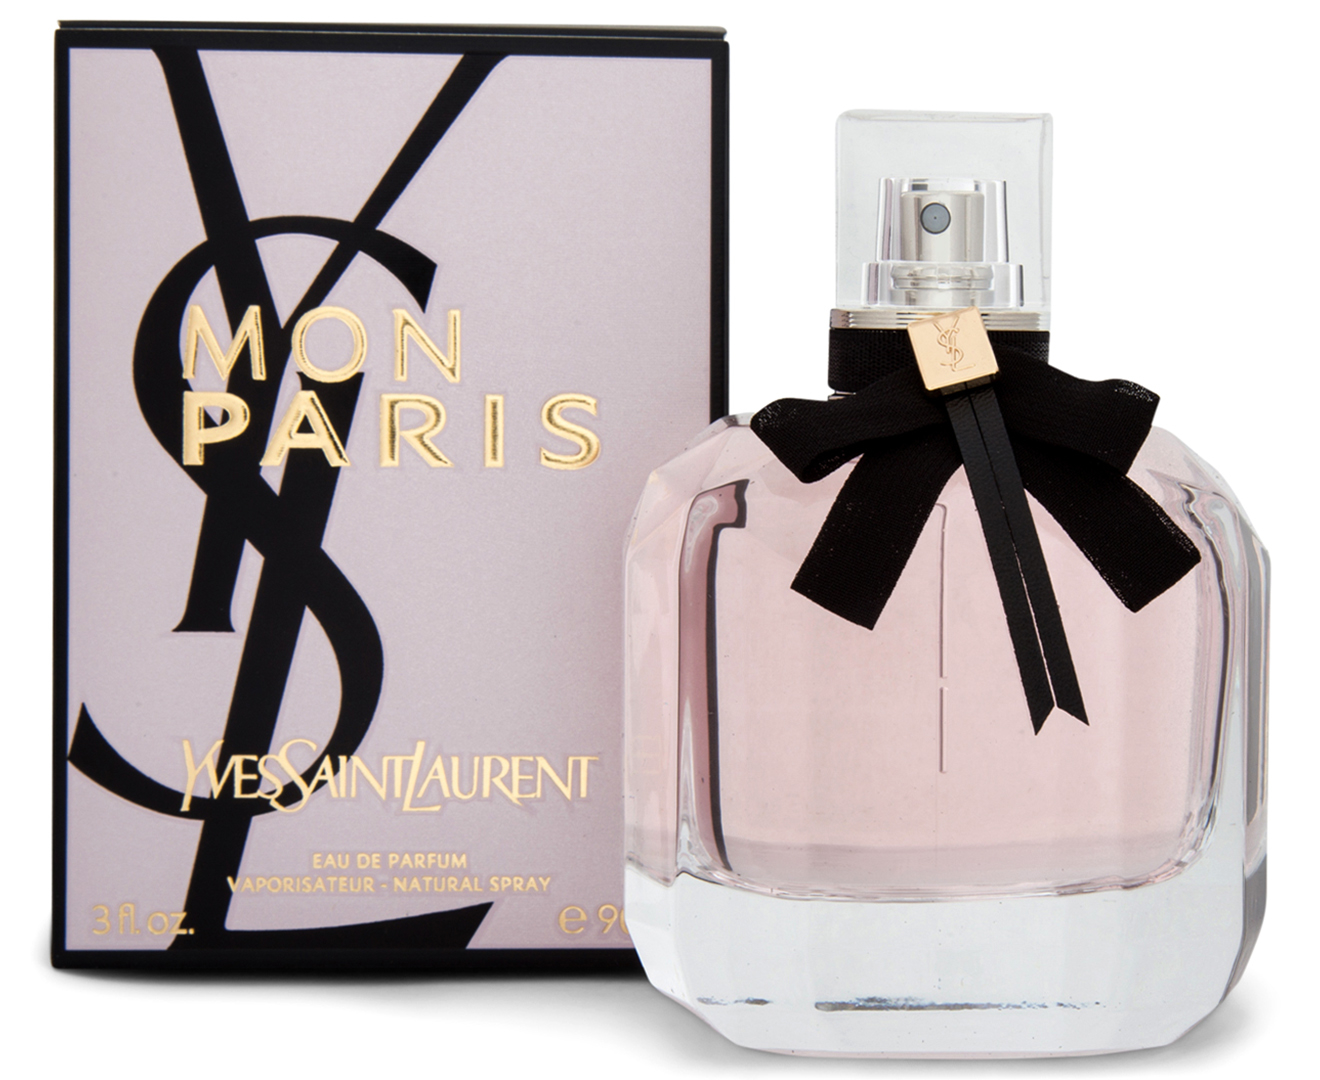 Yves Saint Laurent Mon Paris For Women EDP Perfume 90mL | Catch.com.au